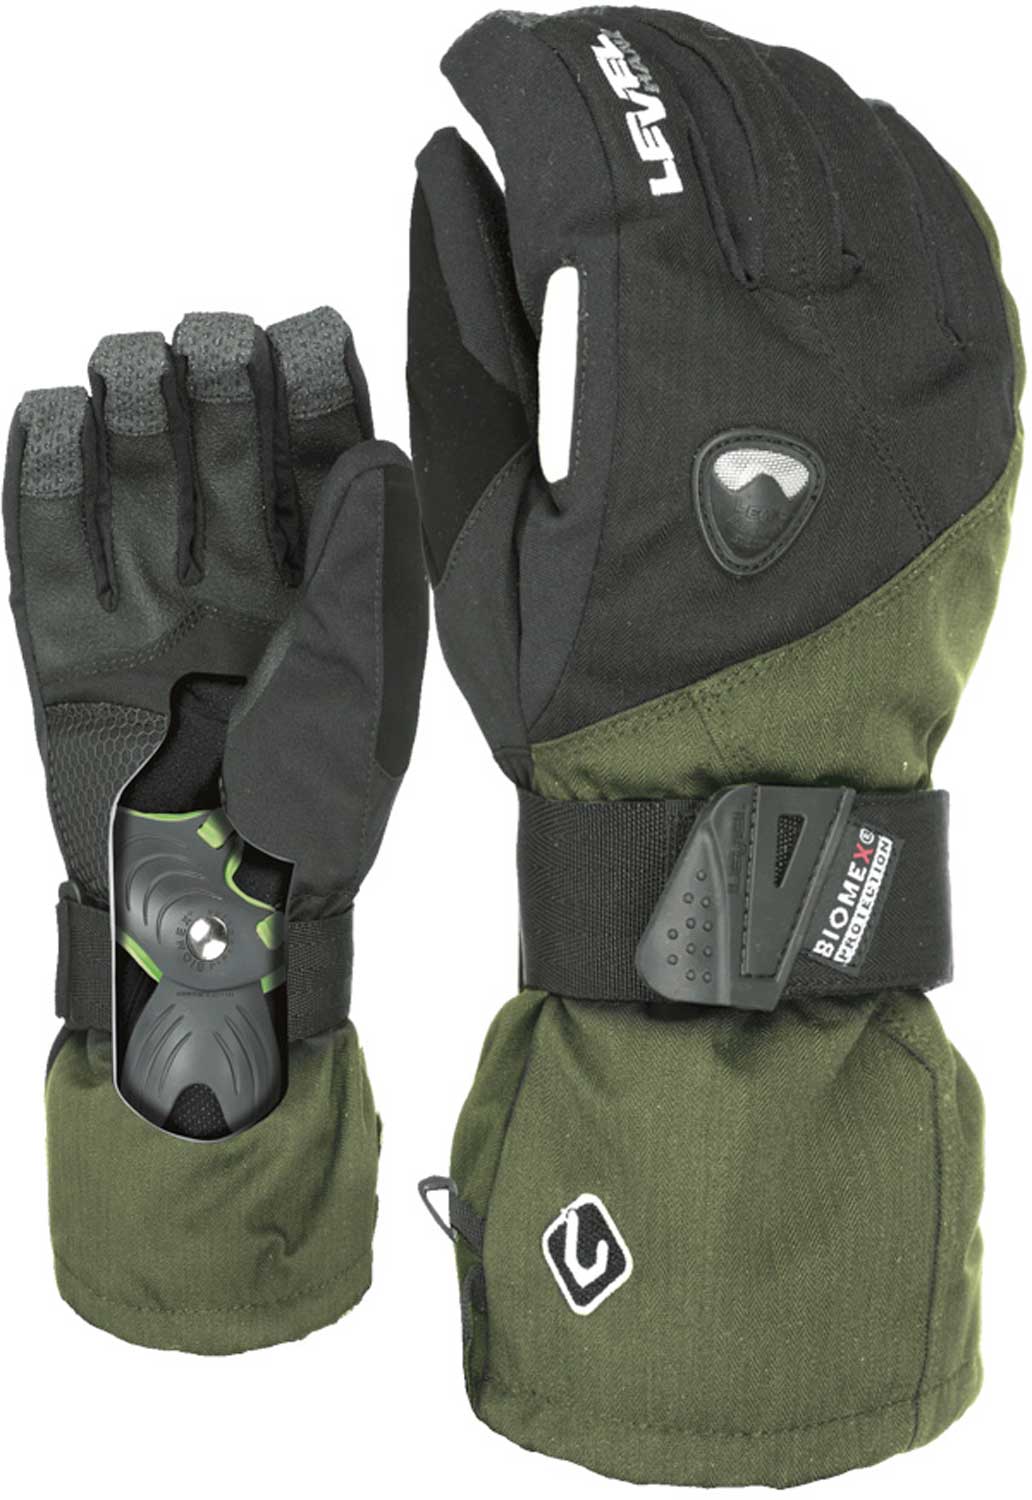 Men’s snowboard gloves